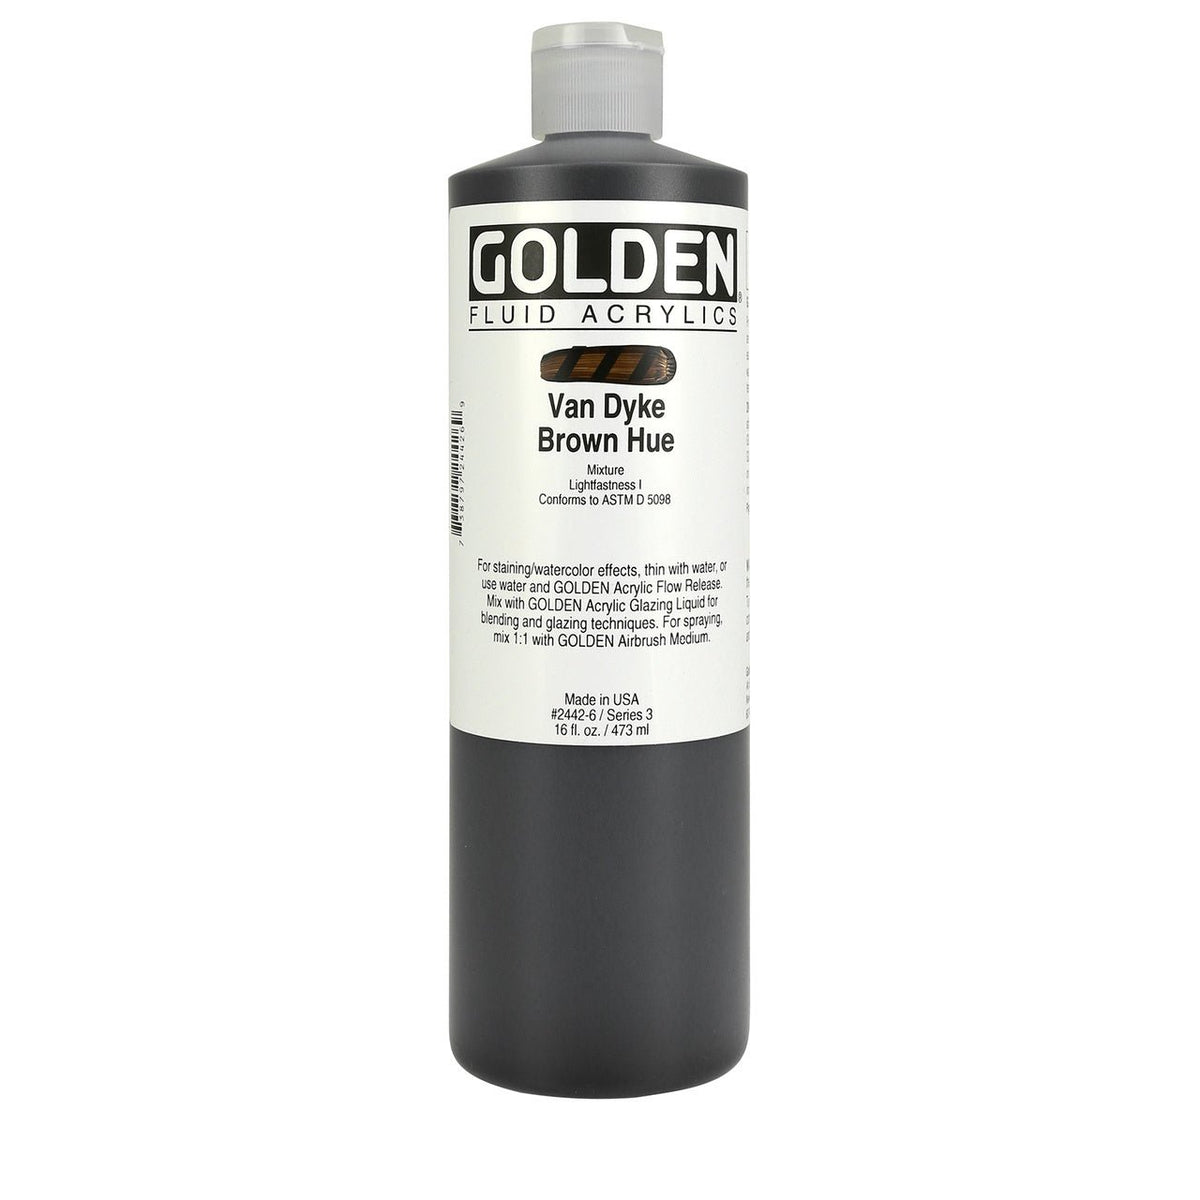 Golden Fluid Acrylic Van Dyke Brown Hue 16 oz - merriartist.com